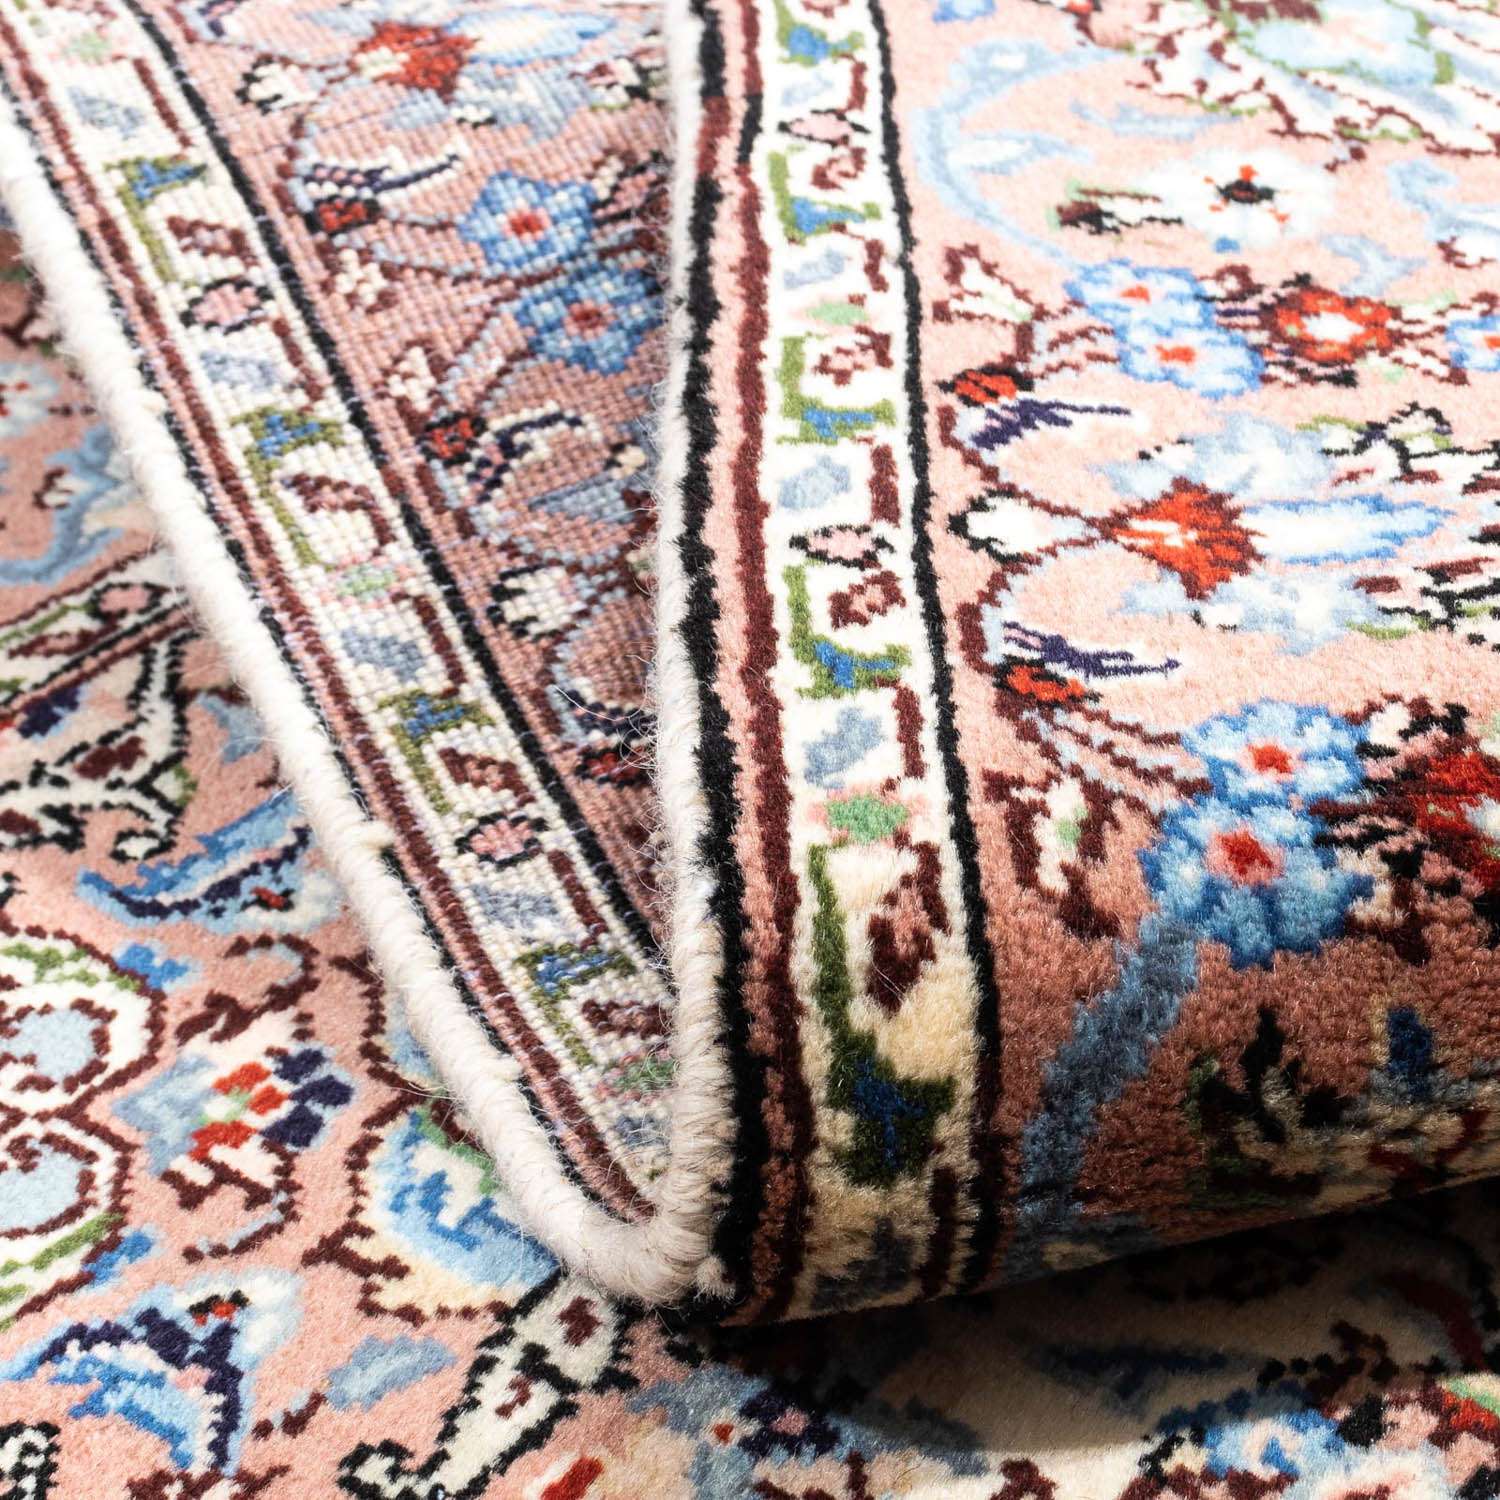 Perzisch tapijt - Keshan - 153 x 98 cm - beige